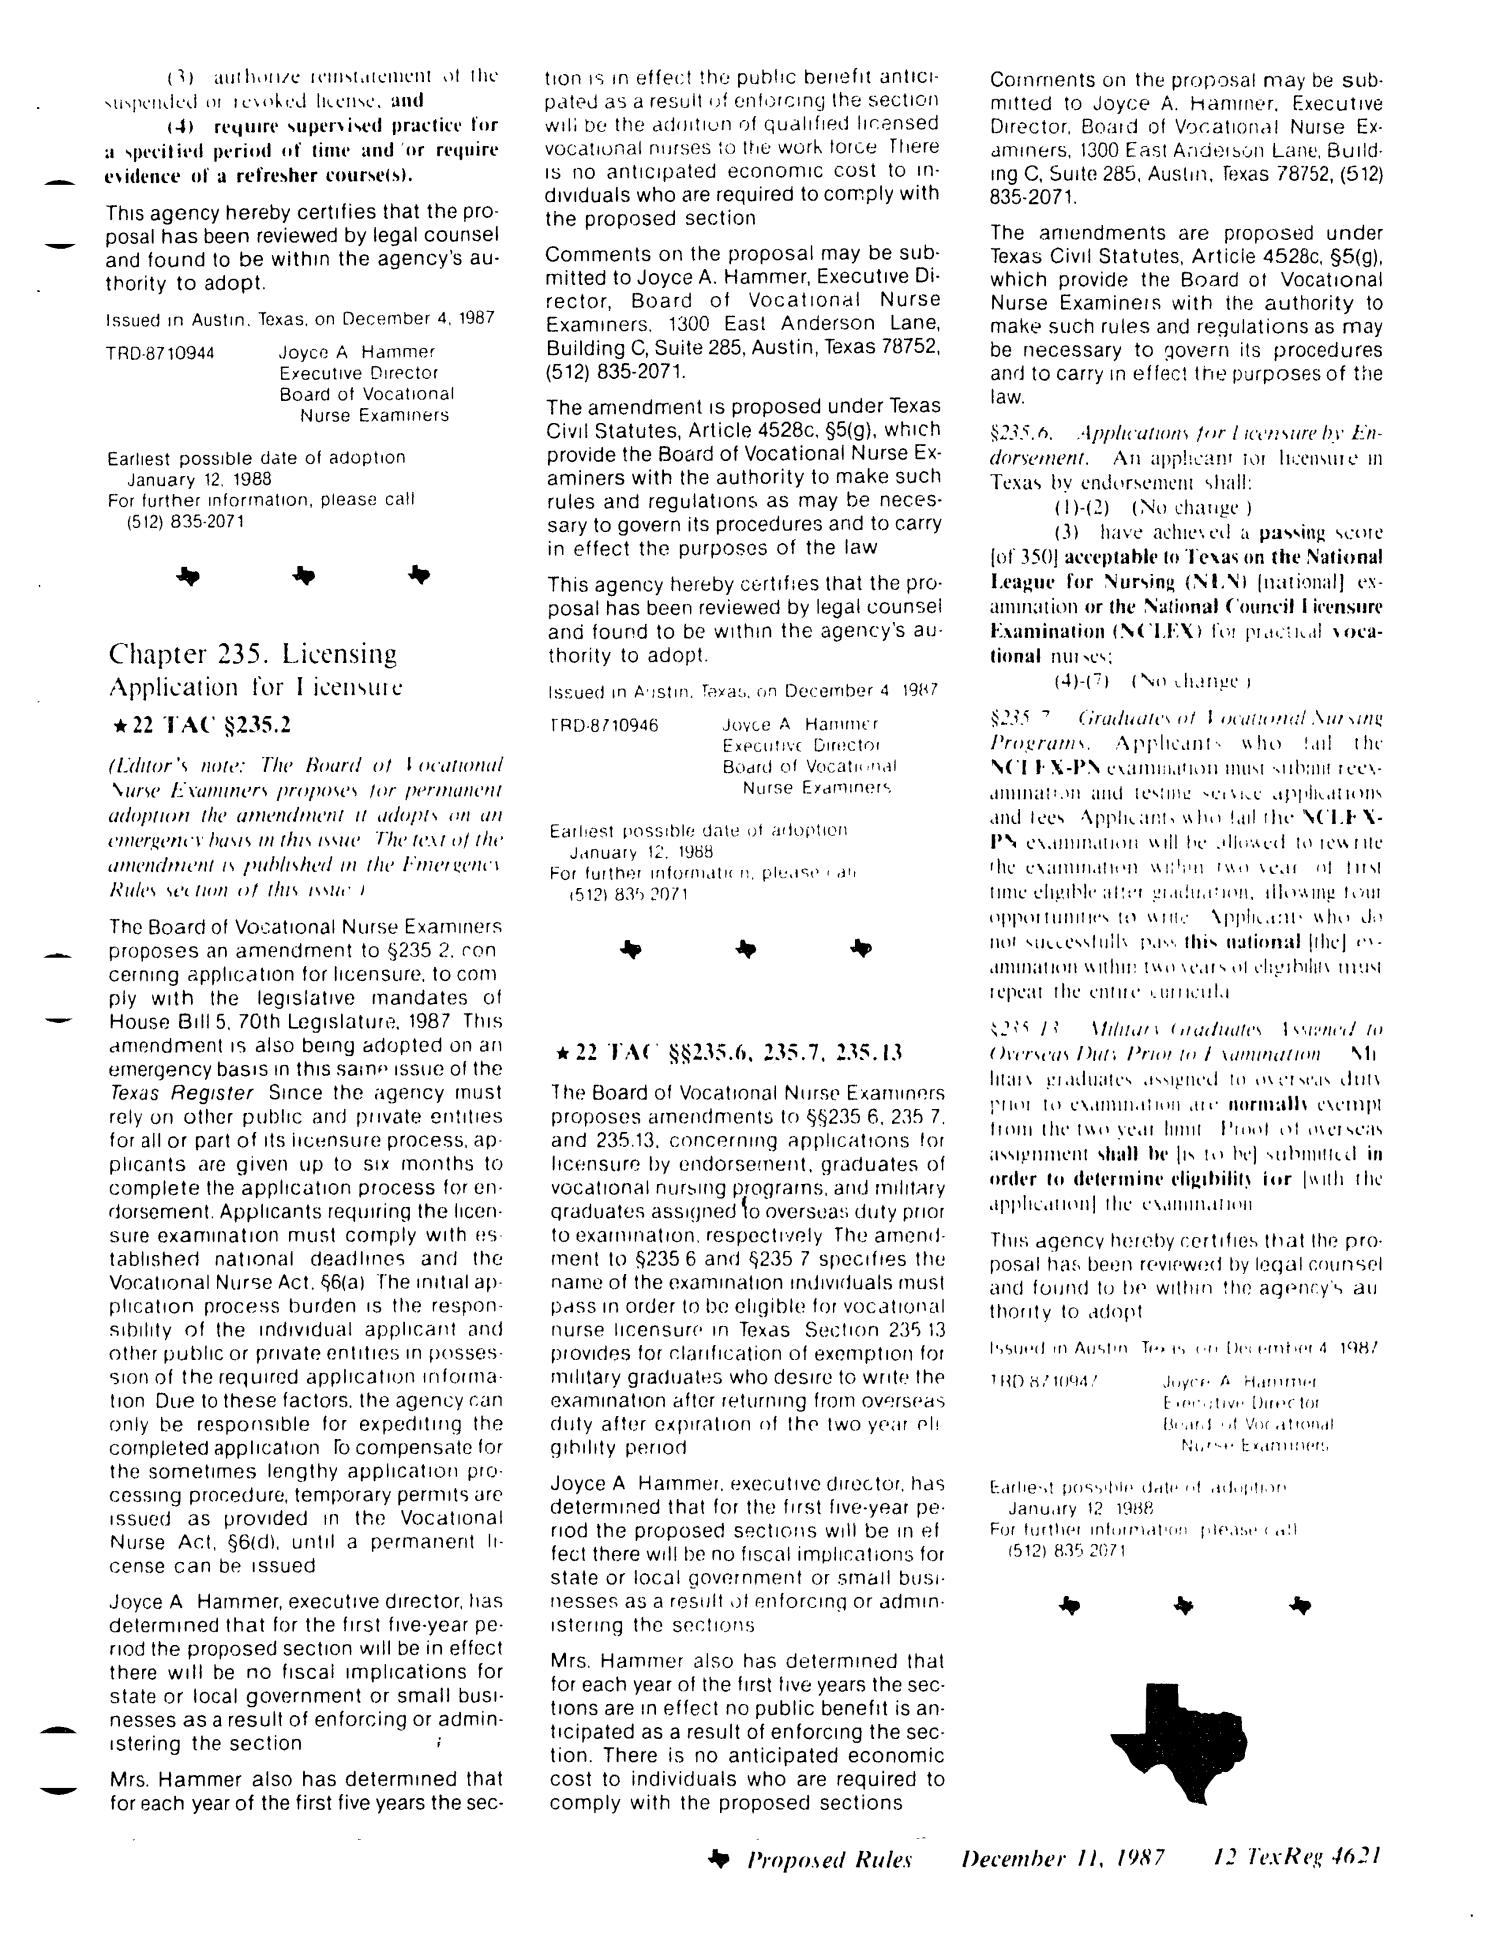 Texas Register, Volume 12, Number 92, Pages 4605-4656, December 11, 1987
                                                
                                                    4621
                                                